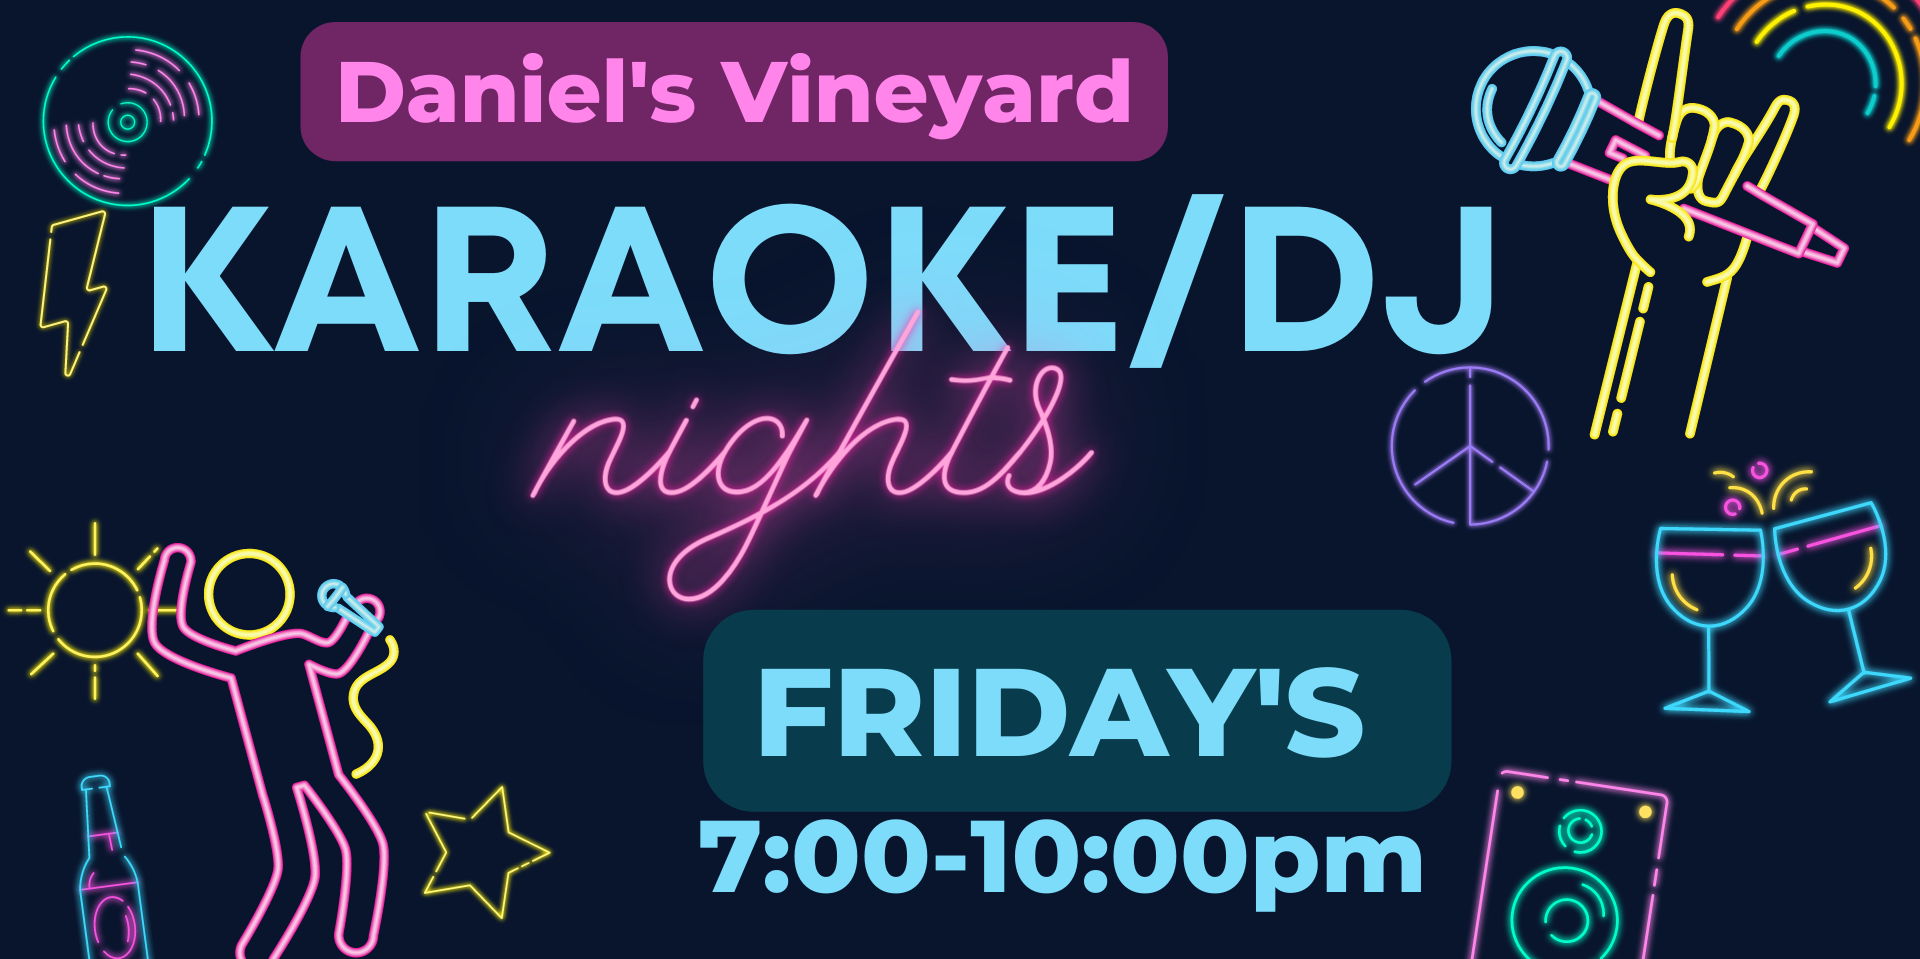 Karaoke/DJ Nights promotional image